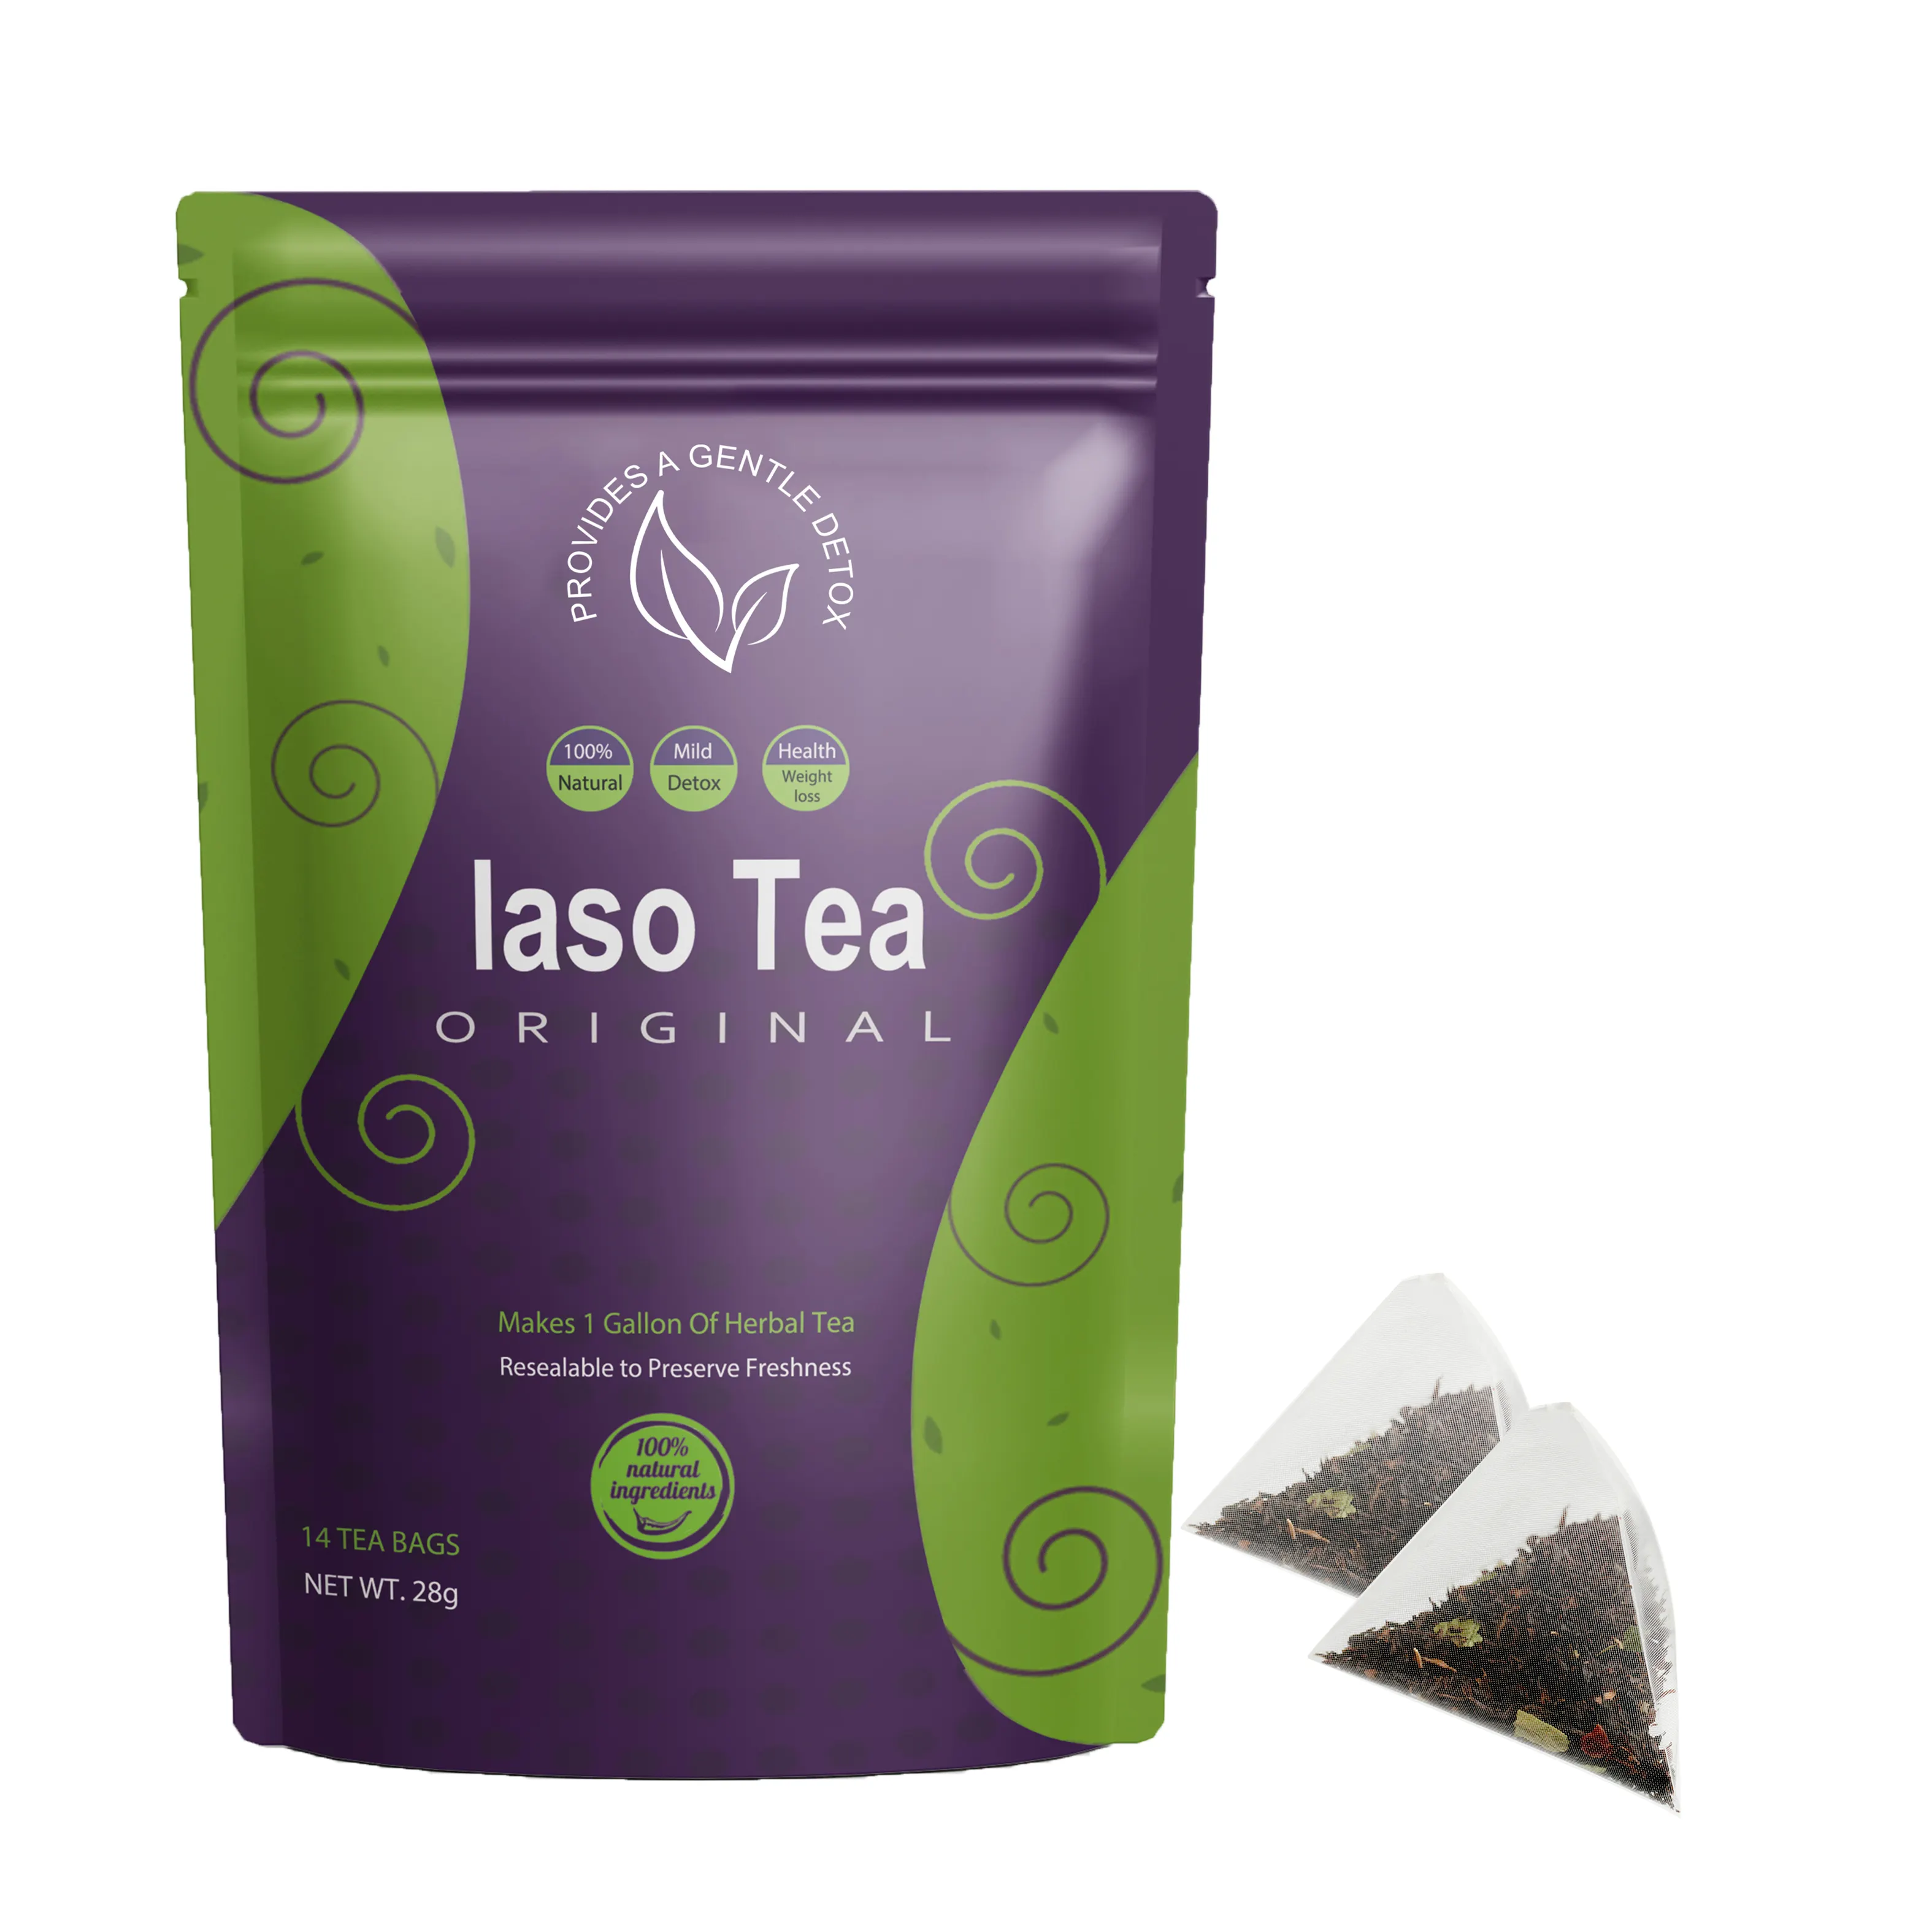 14 יום מייז iaso תה detox שקיות תה לשנות את החיים שלך לחלוטין צמחי מרפא טבעיים לחלוטין מרעה הבטן עם השם שלך